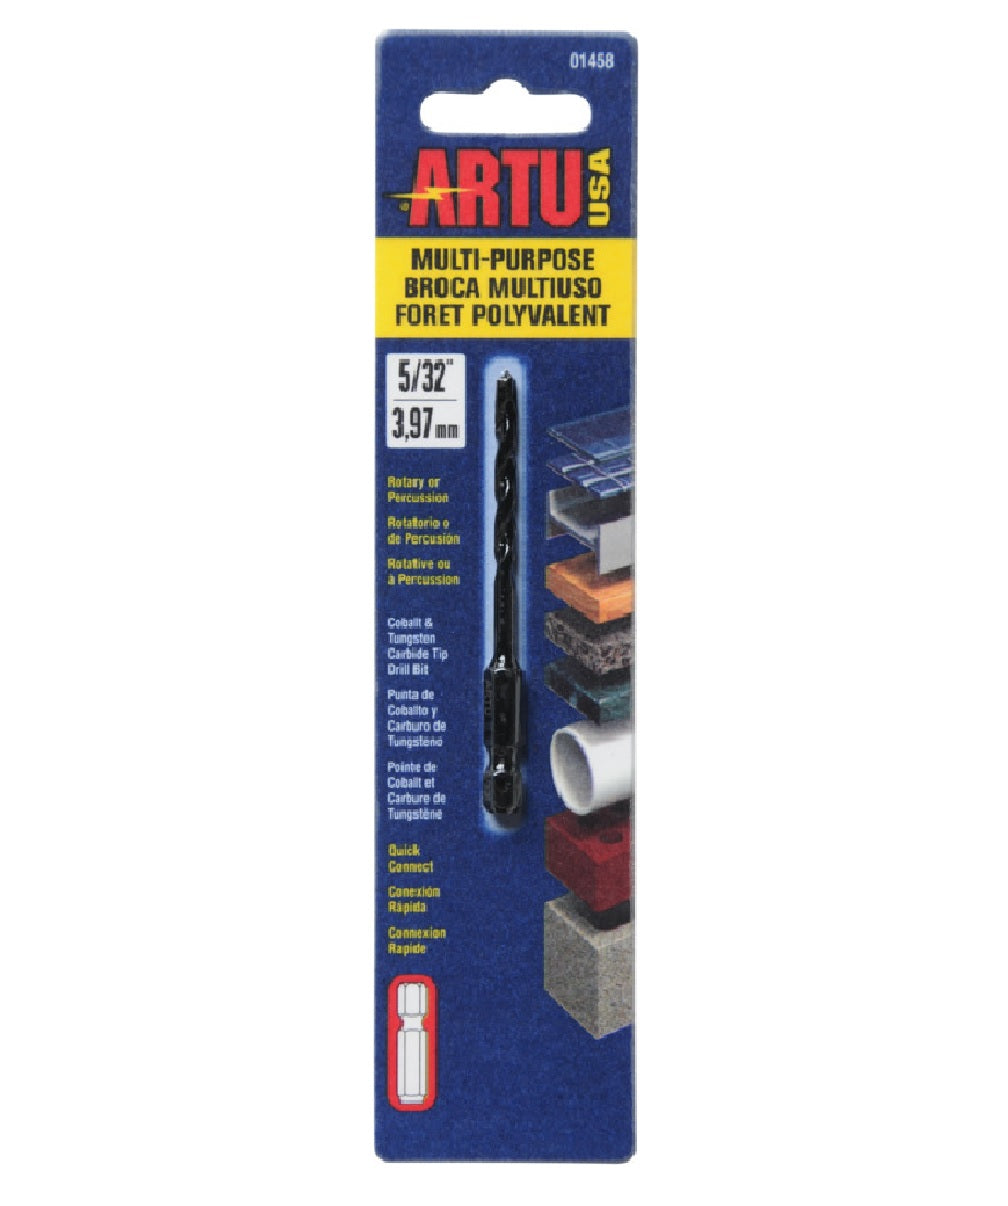 Artu Usa 01458 Multi-Purpose Quick Connect Drill Bit, 5/32 Inch